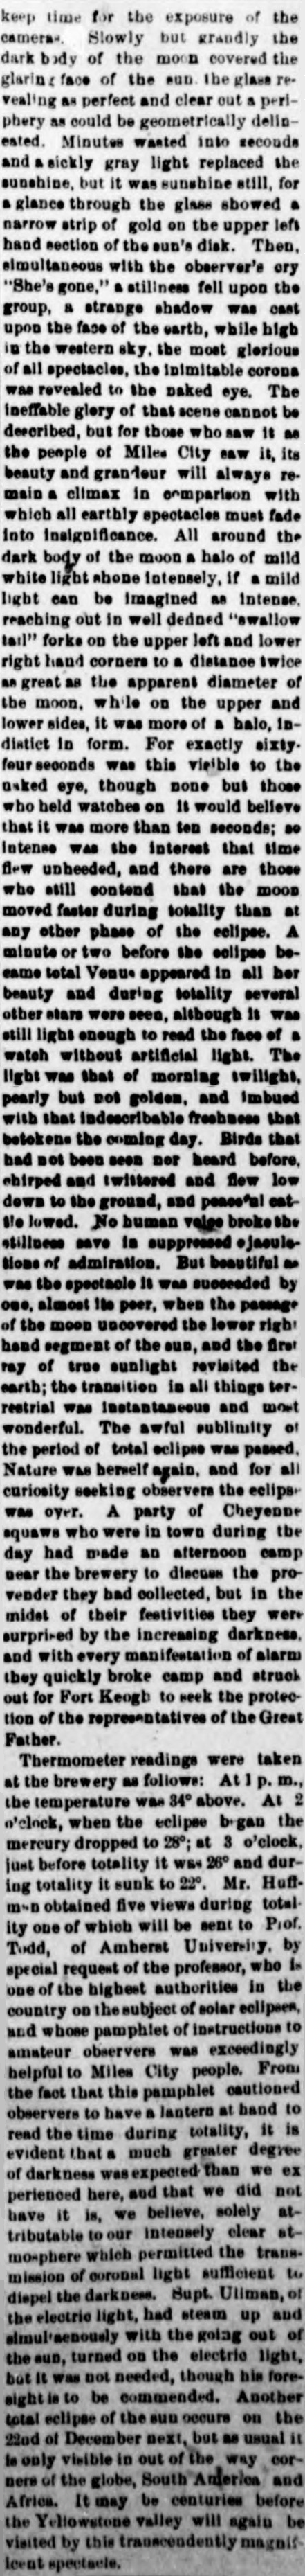 Daily Yellowstone Journal - January 3, 1889